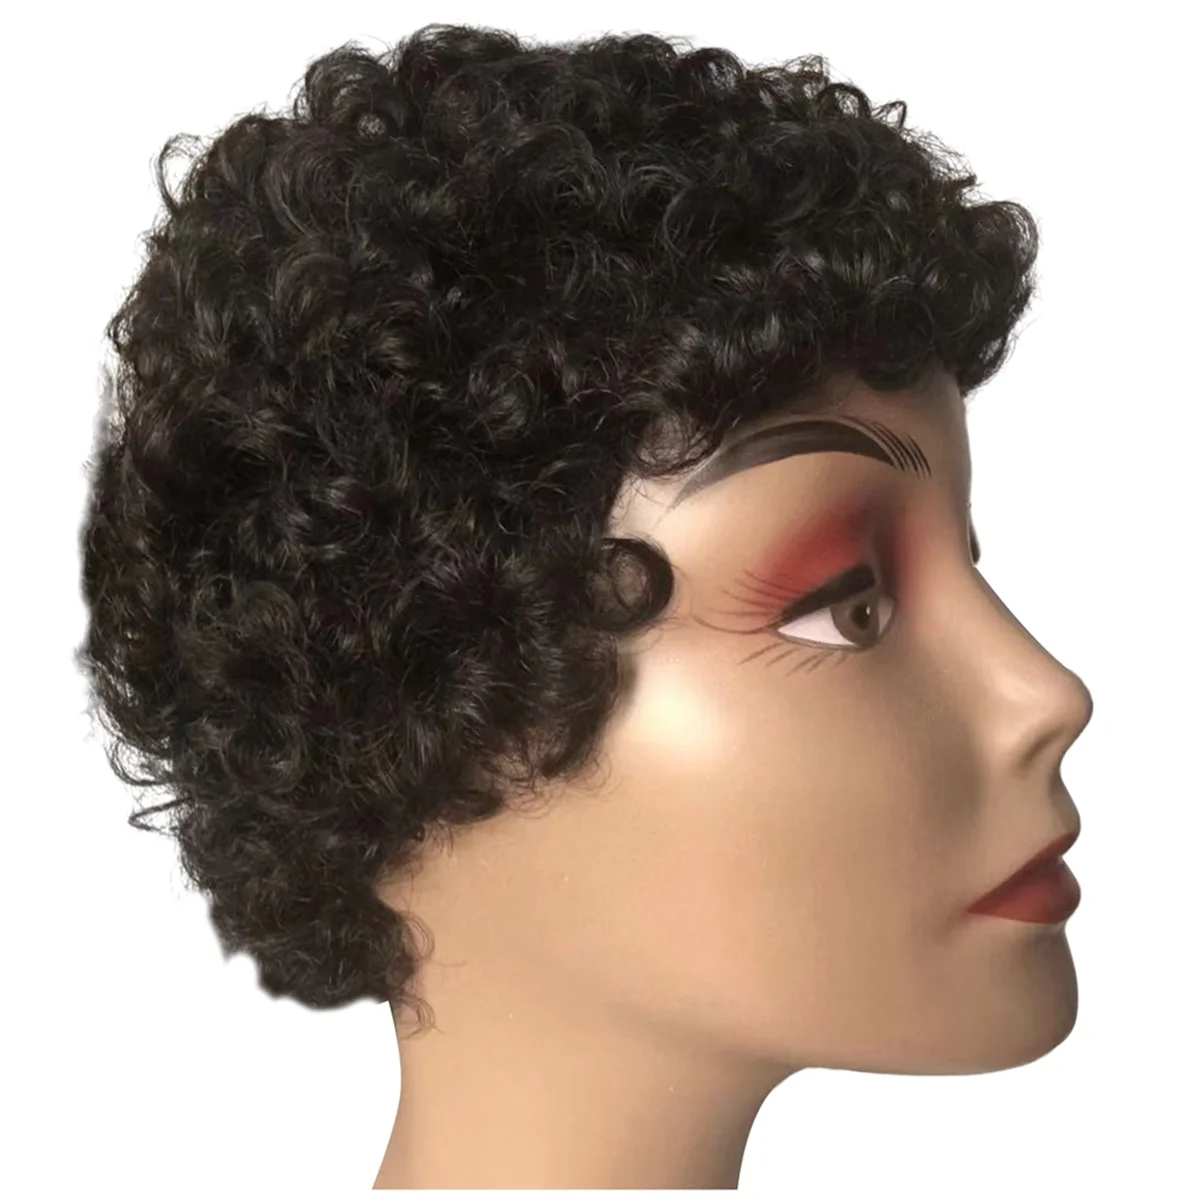 

Ветер Летающий дешевый короткий вьющийся человеческий волос парик для женщин Remy бразильский хиар парик афро вьющийся короткий человеческий парик, черный